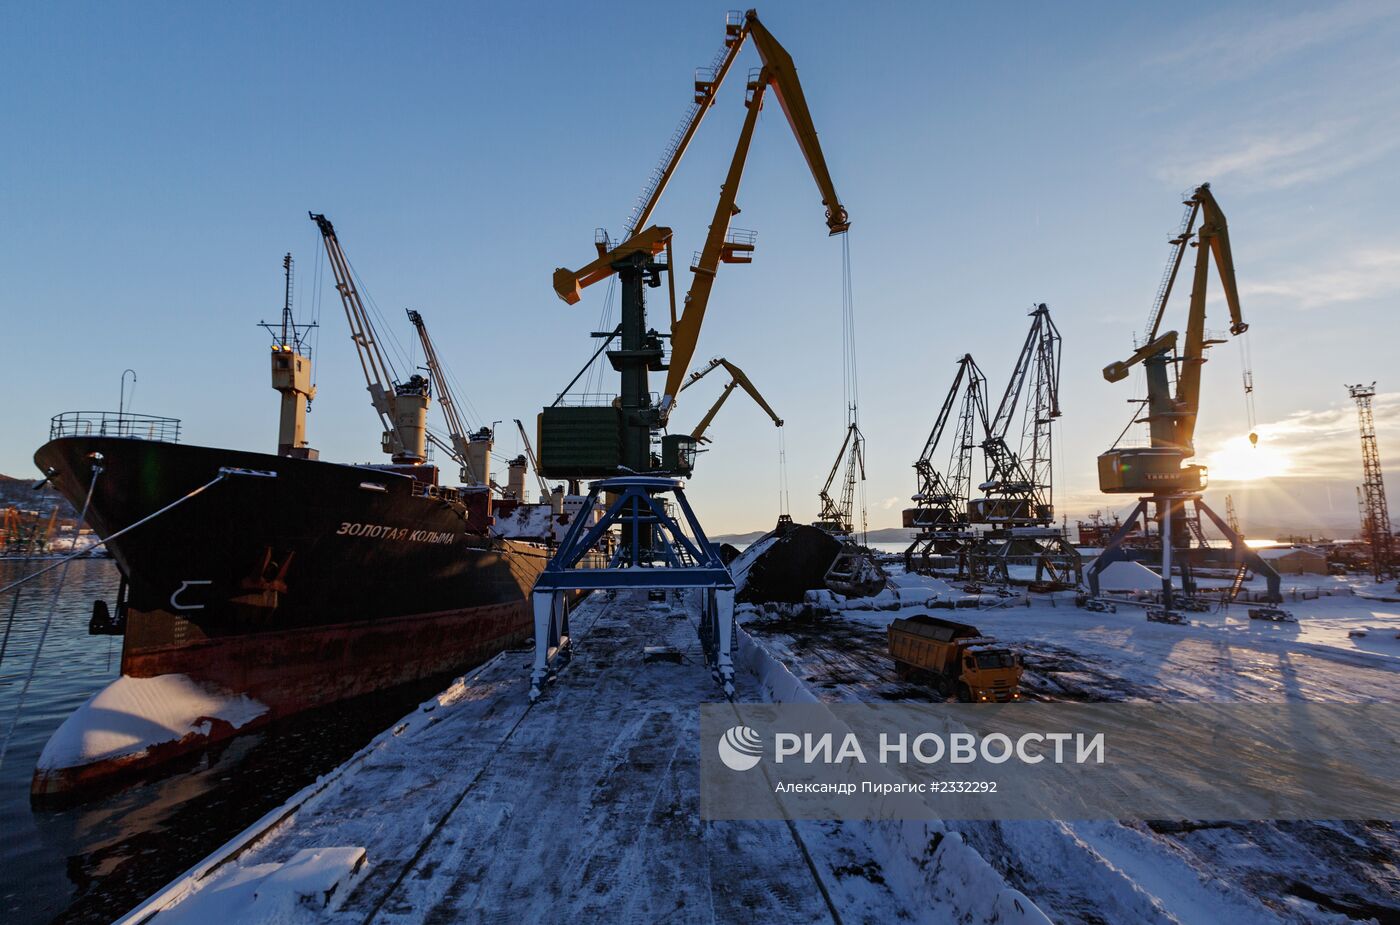 Петропавловск-Камчатский морской торговый порт